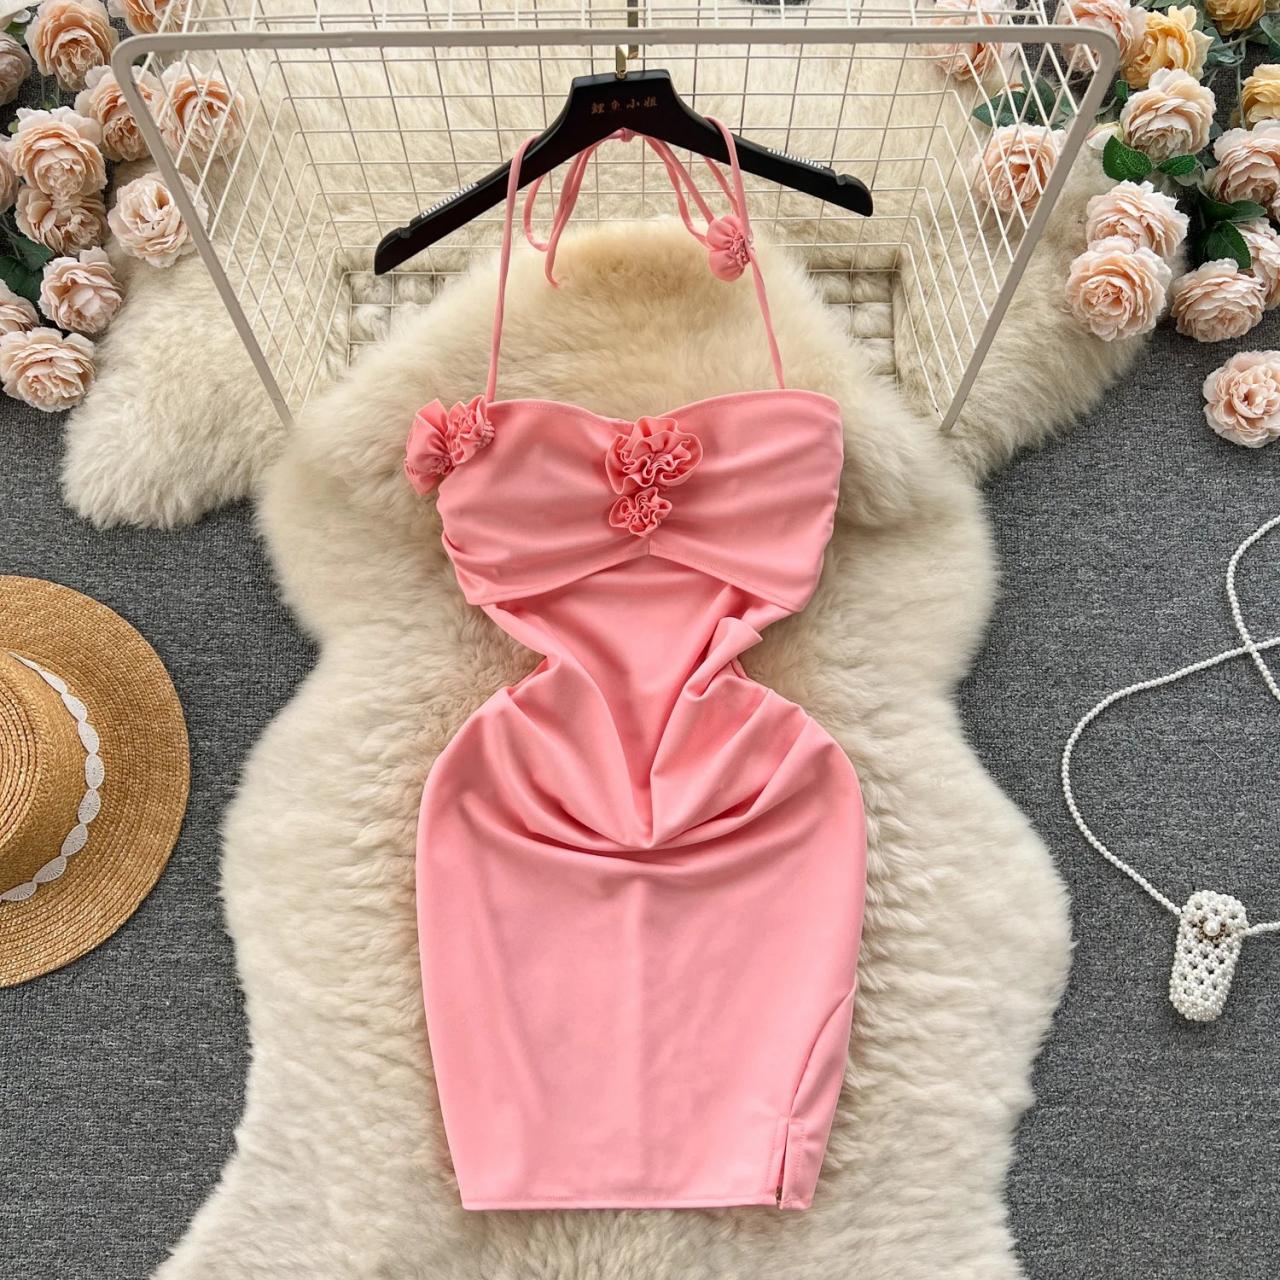 Elegant Pink Ruched Dress With Floral Appliqué Details